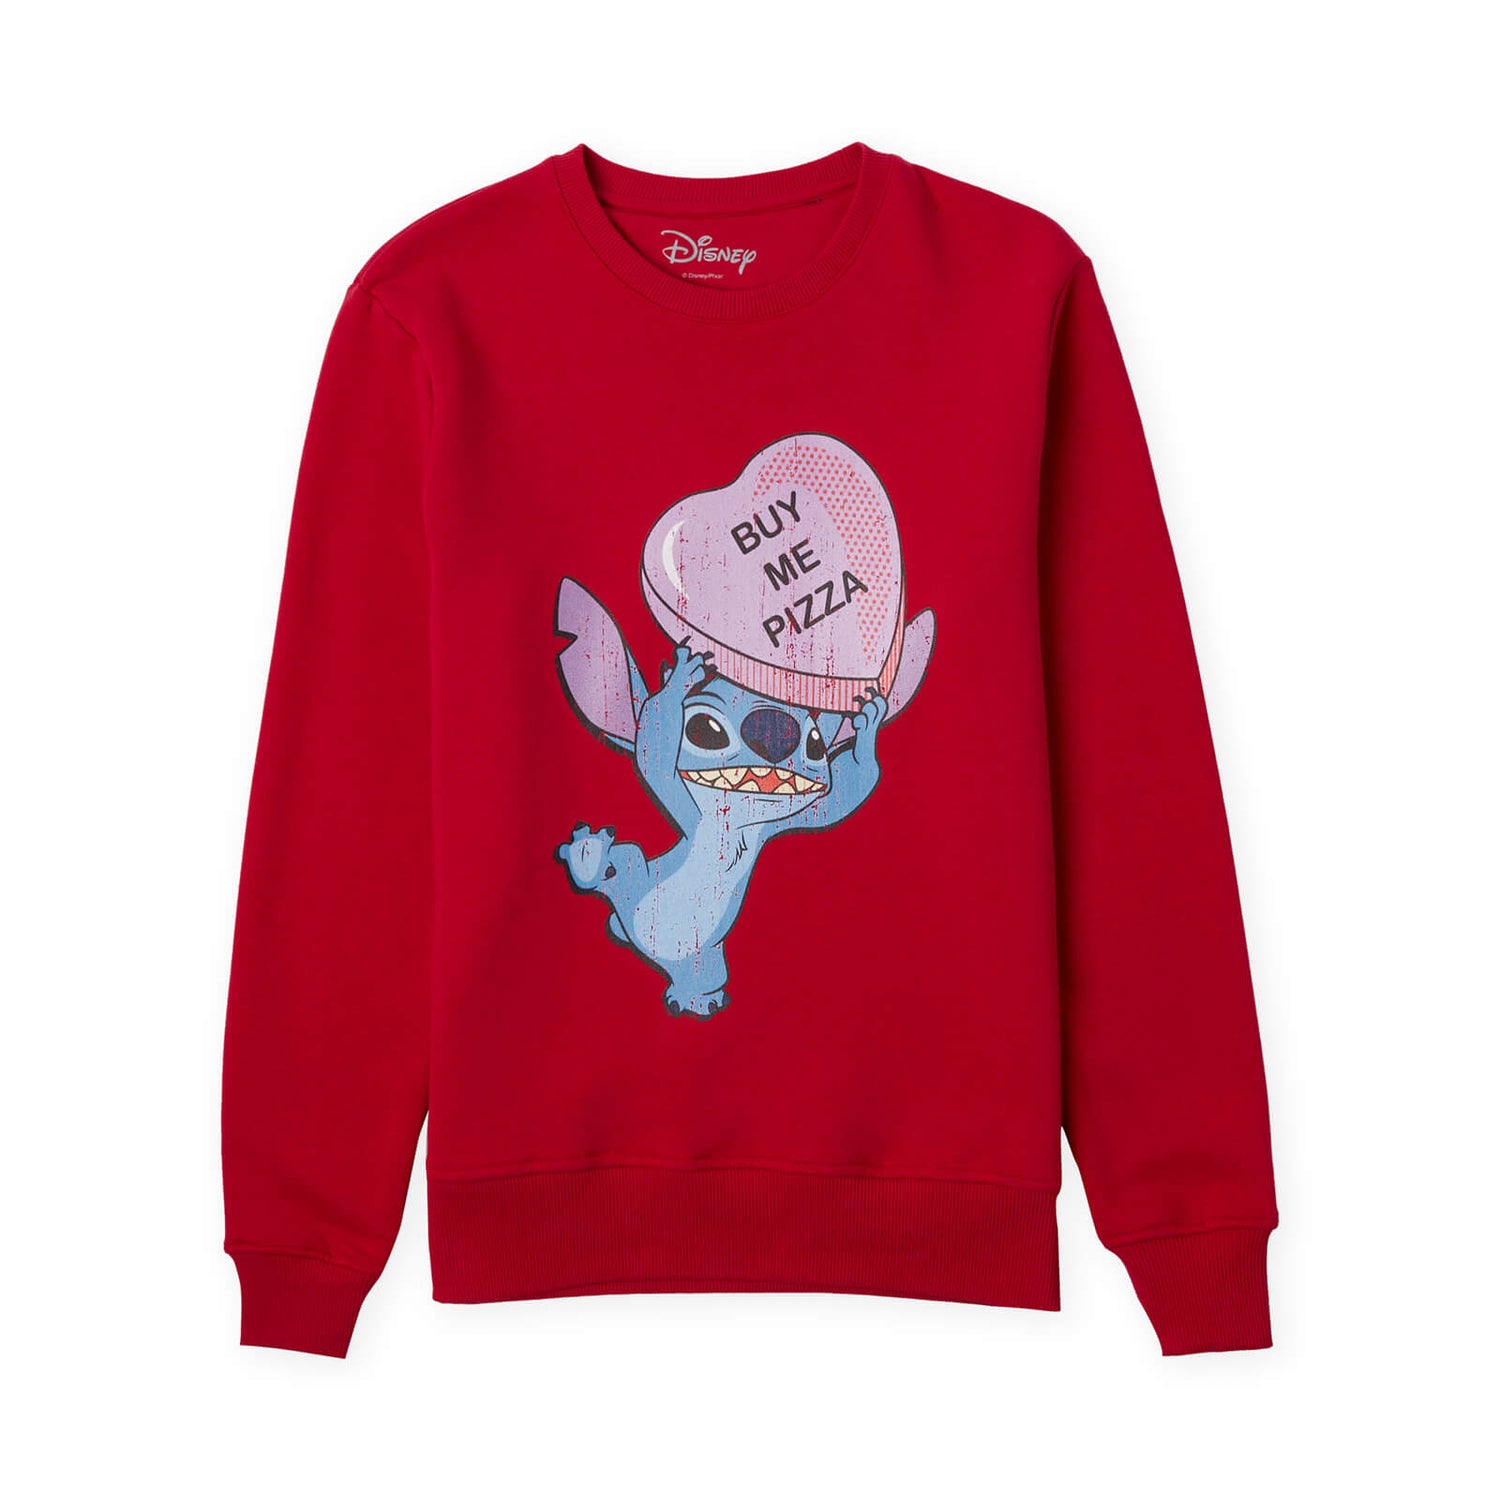 Disney Buy Me Pizza  Sweatshirt - Red